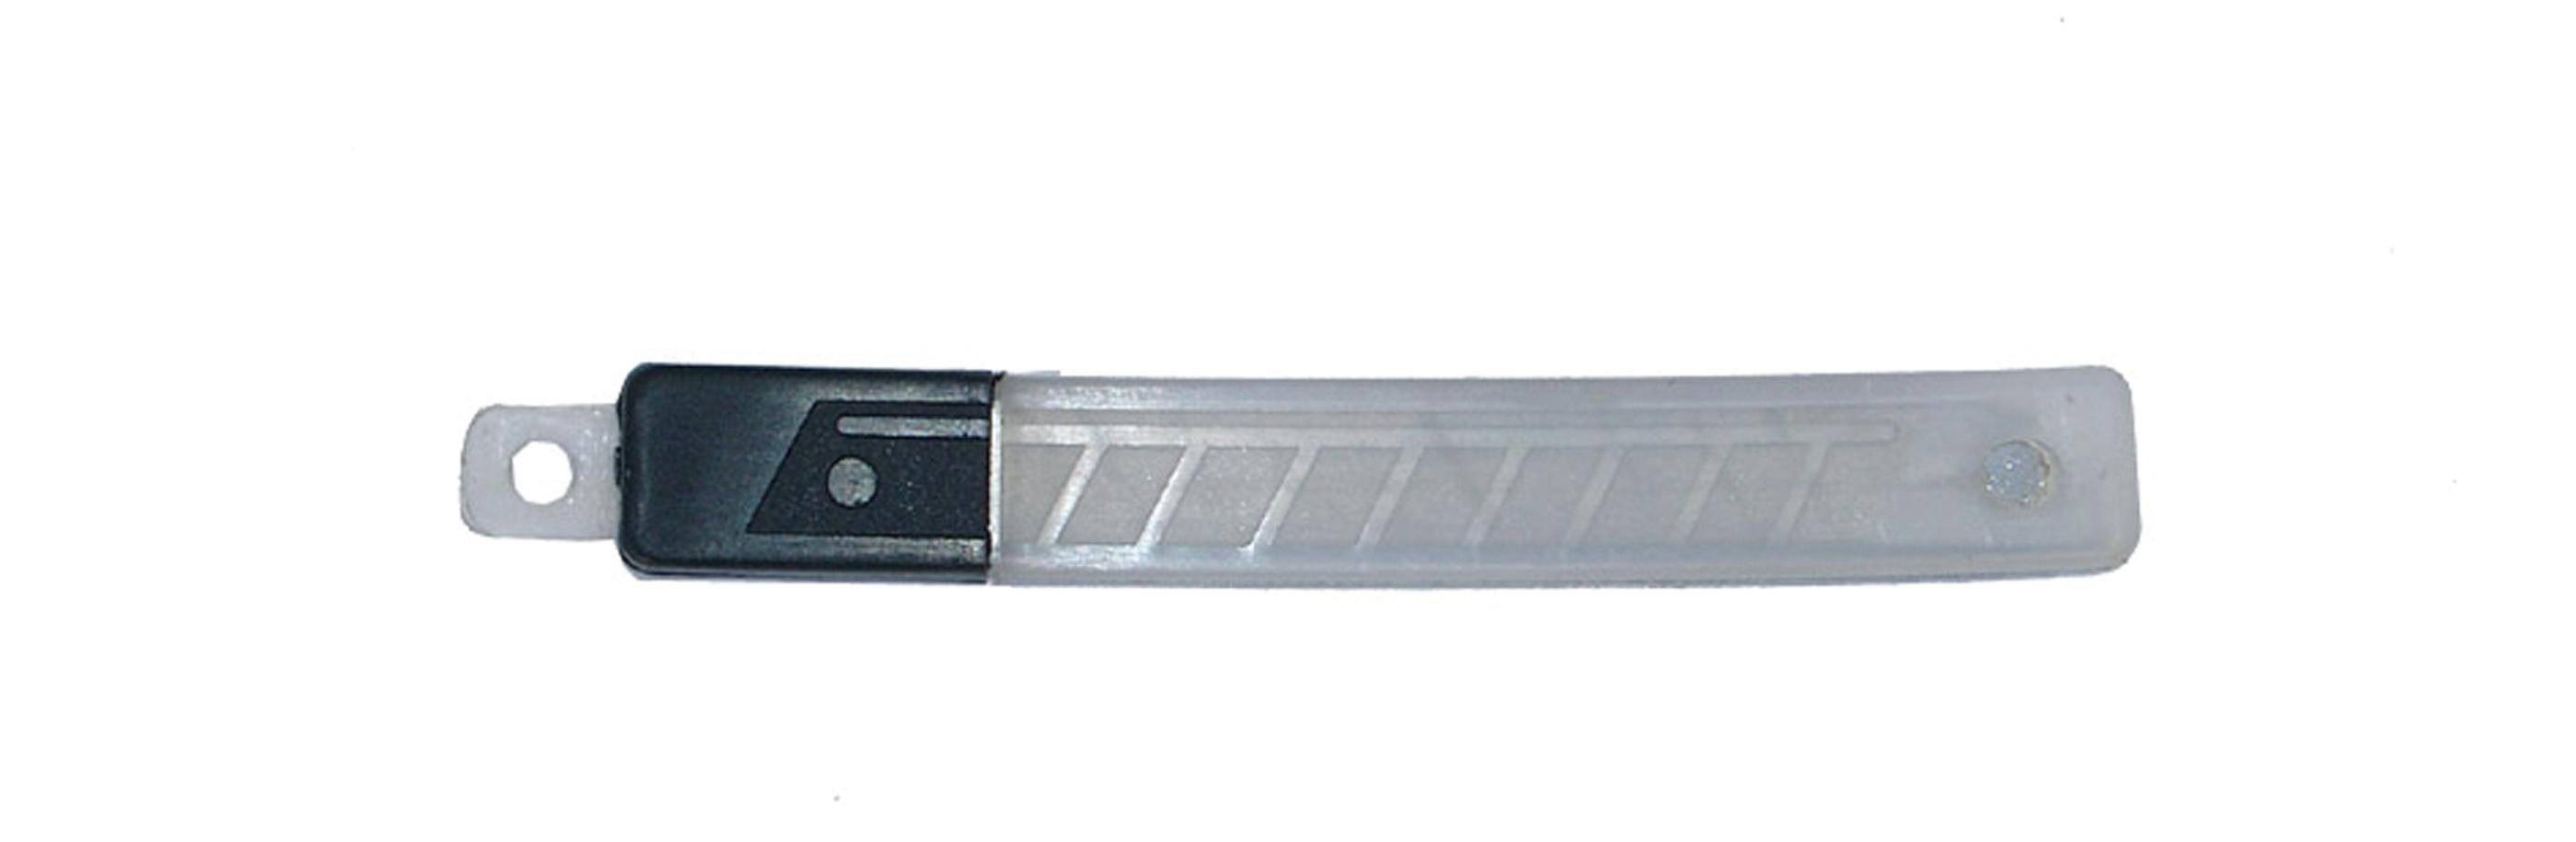 BGS technic Cuttermesser Ersatzklingen-Satz, mm, 10-tlg. 9